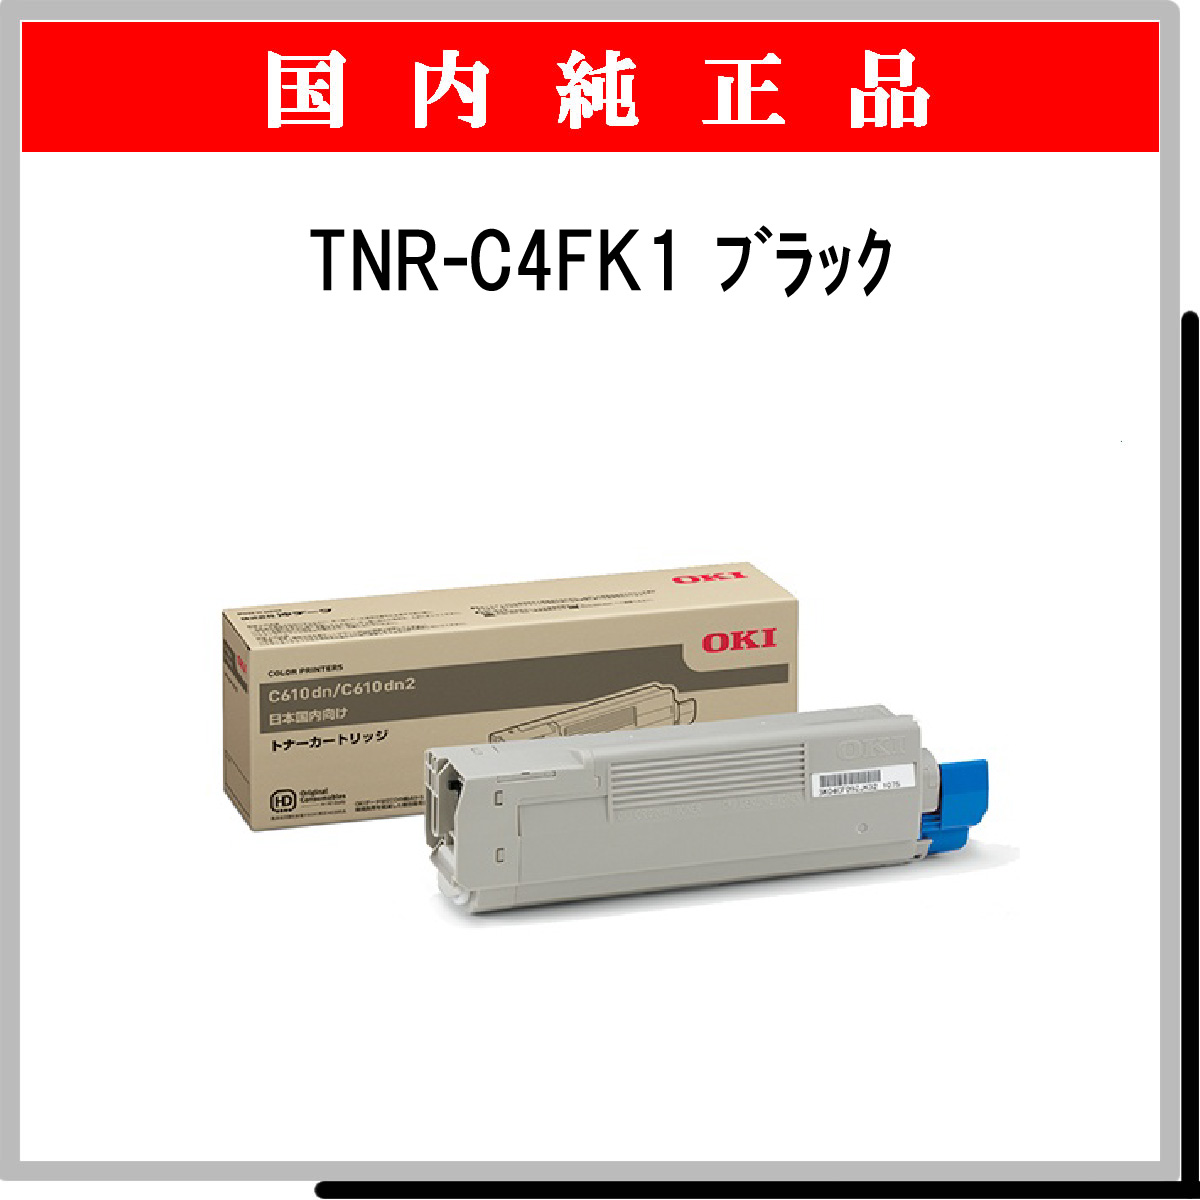 TNR-C4FK1 純正